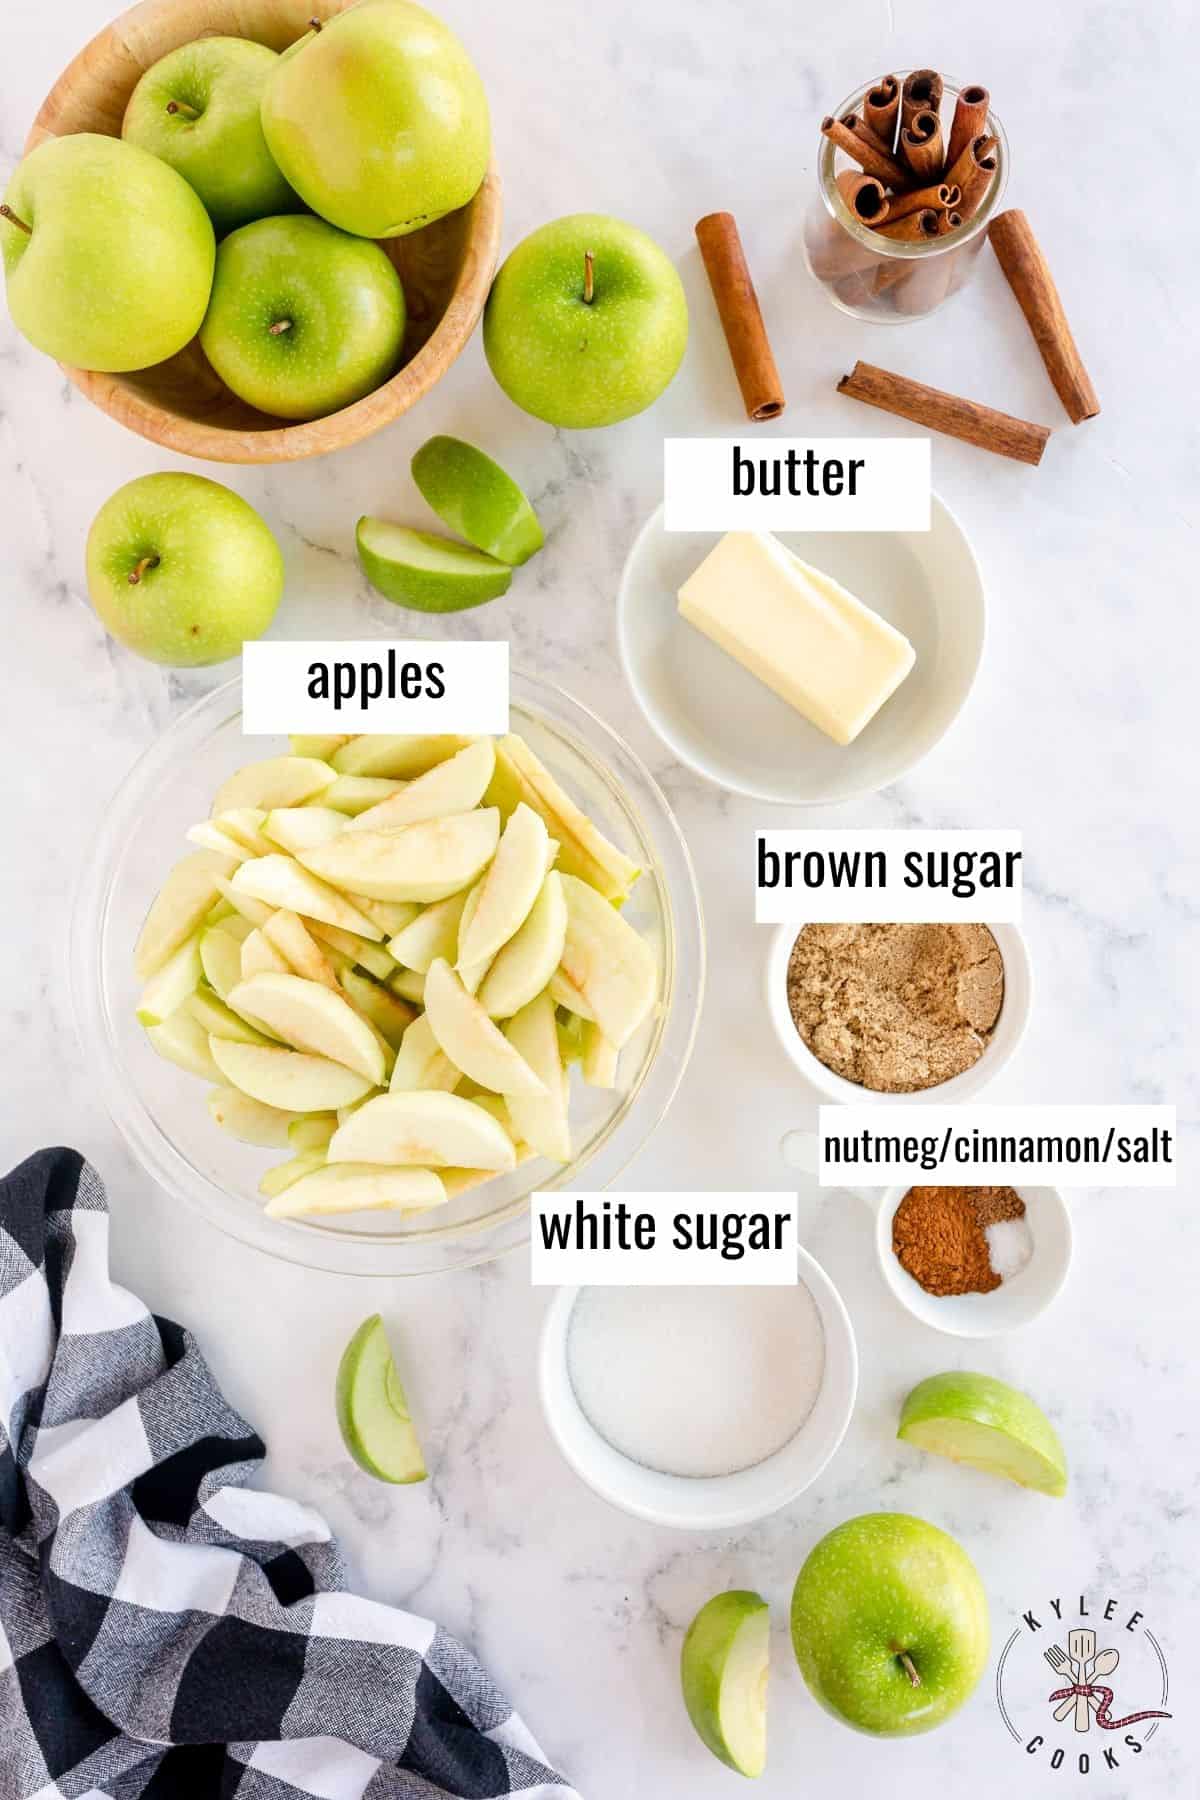 ingrédients pour faire des pommes frites, disposés et étiquetés